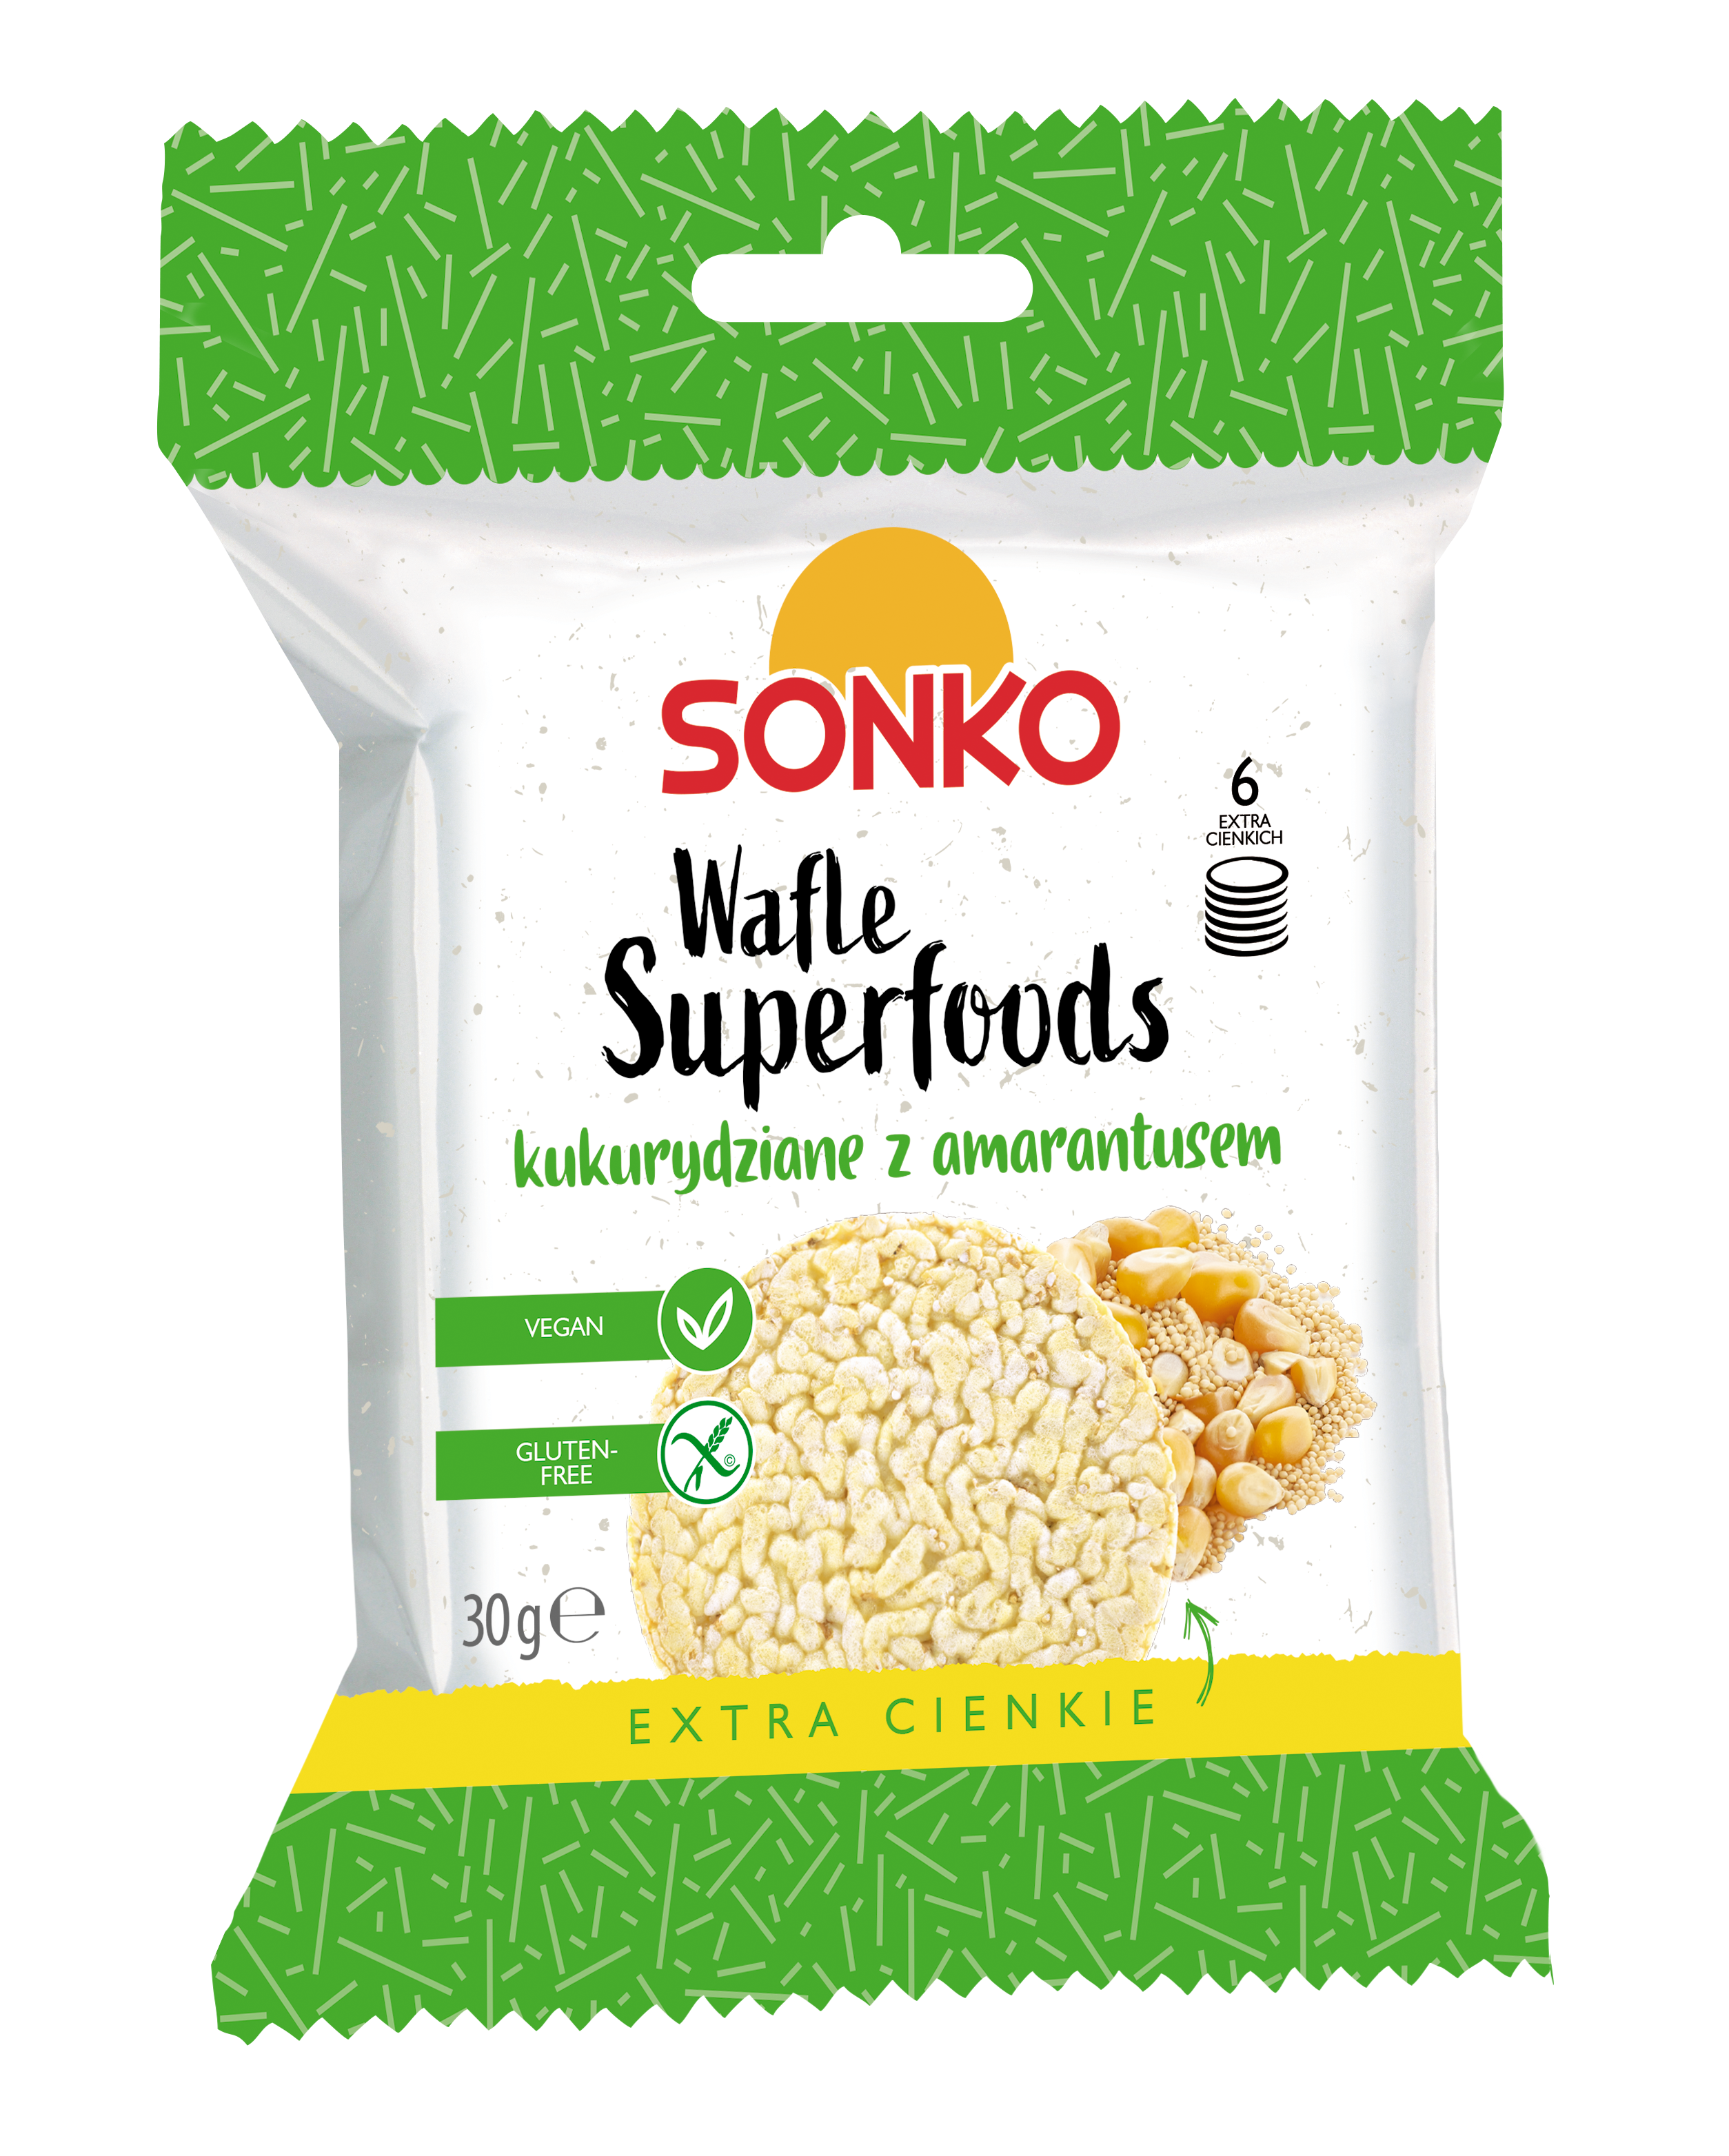 Sonko waffles rice superfoods hemp and kaniwa